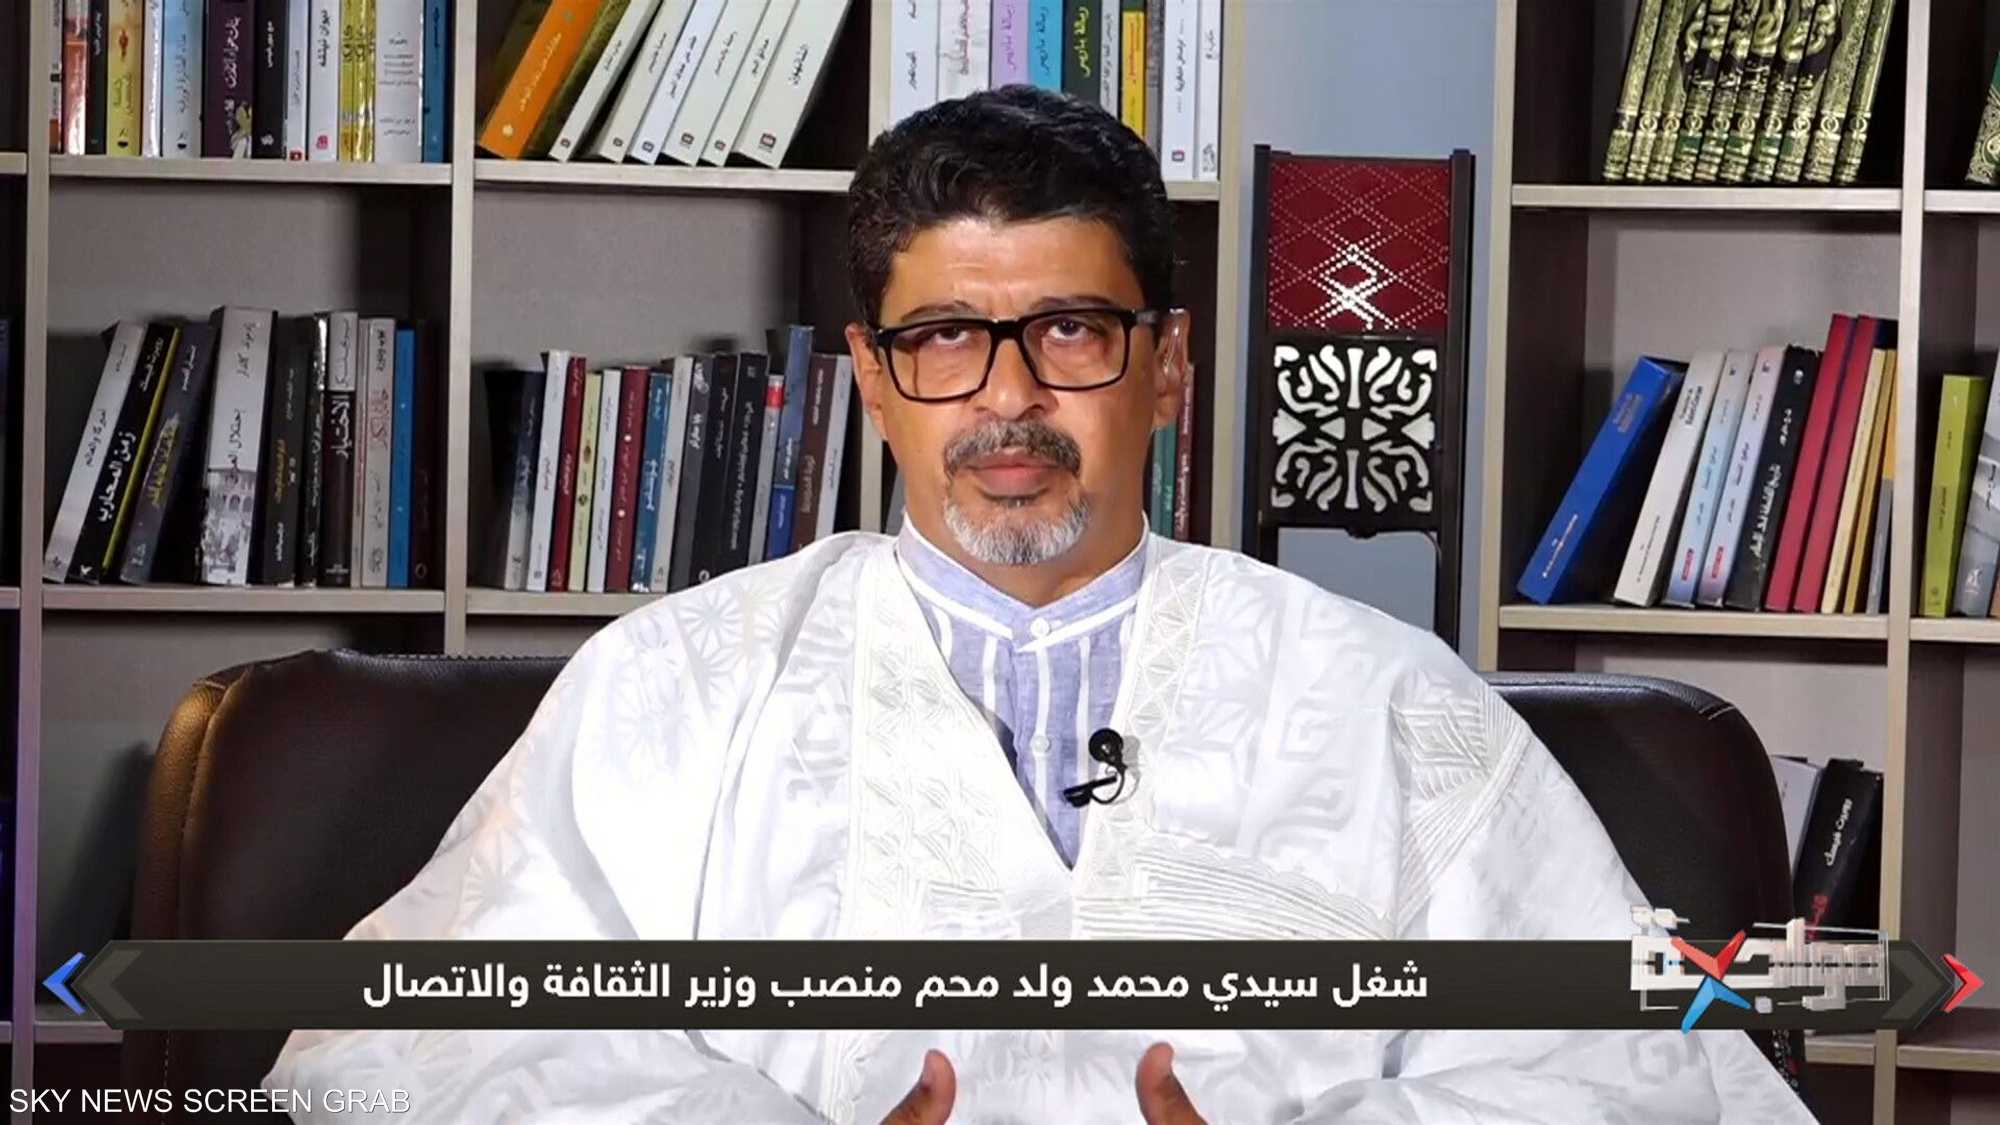 الرئيس السابق لحزب "UPR" سيدي محمد ولد محم